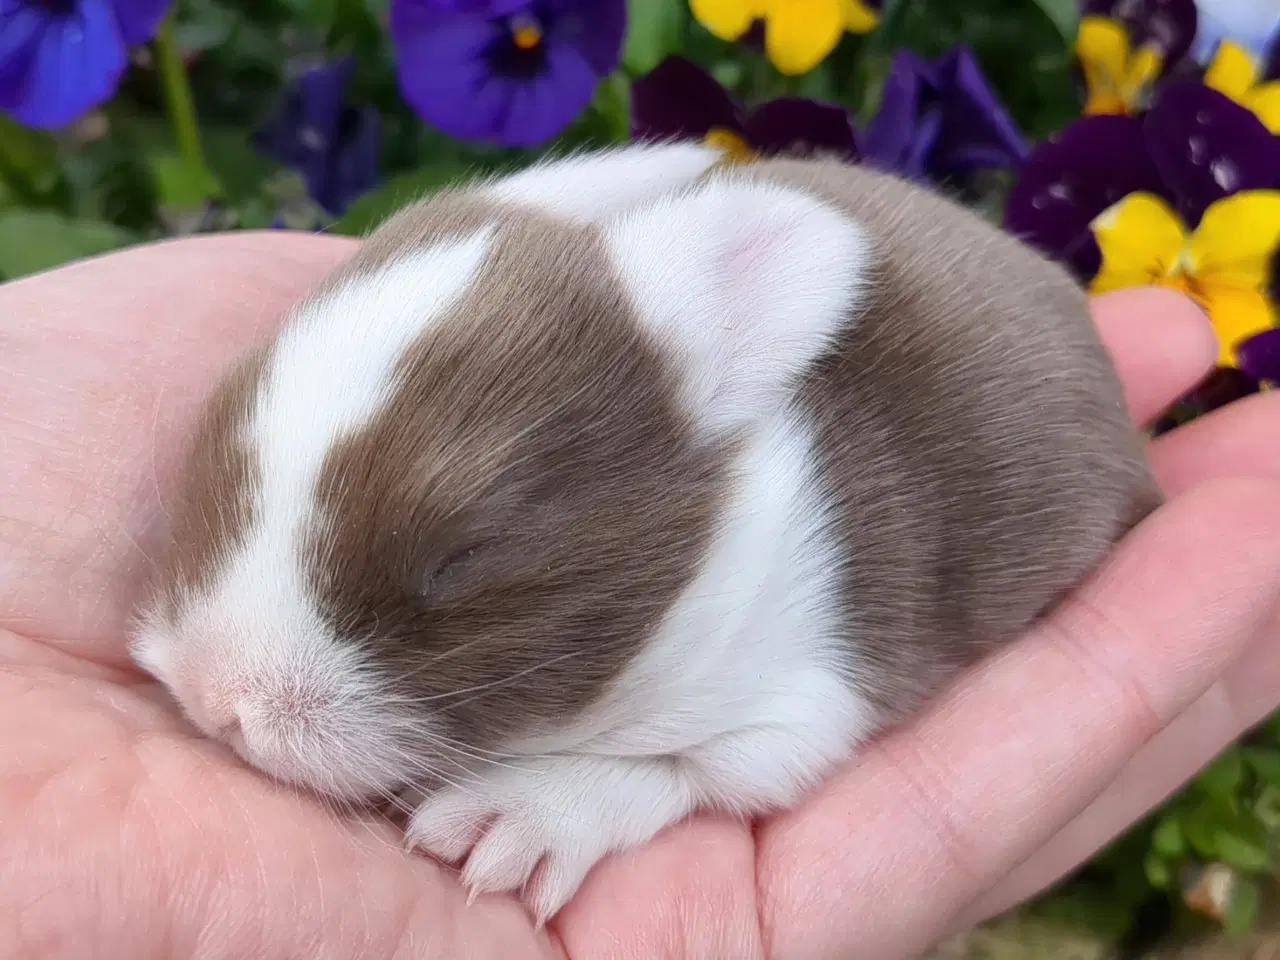 Billede 16 - Minilop kaninunger sælges 